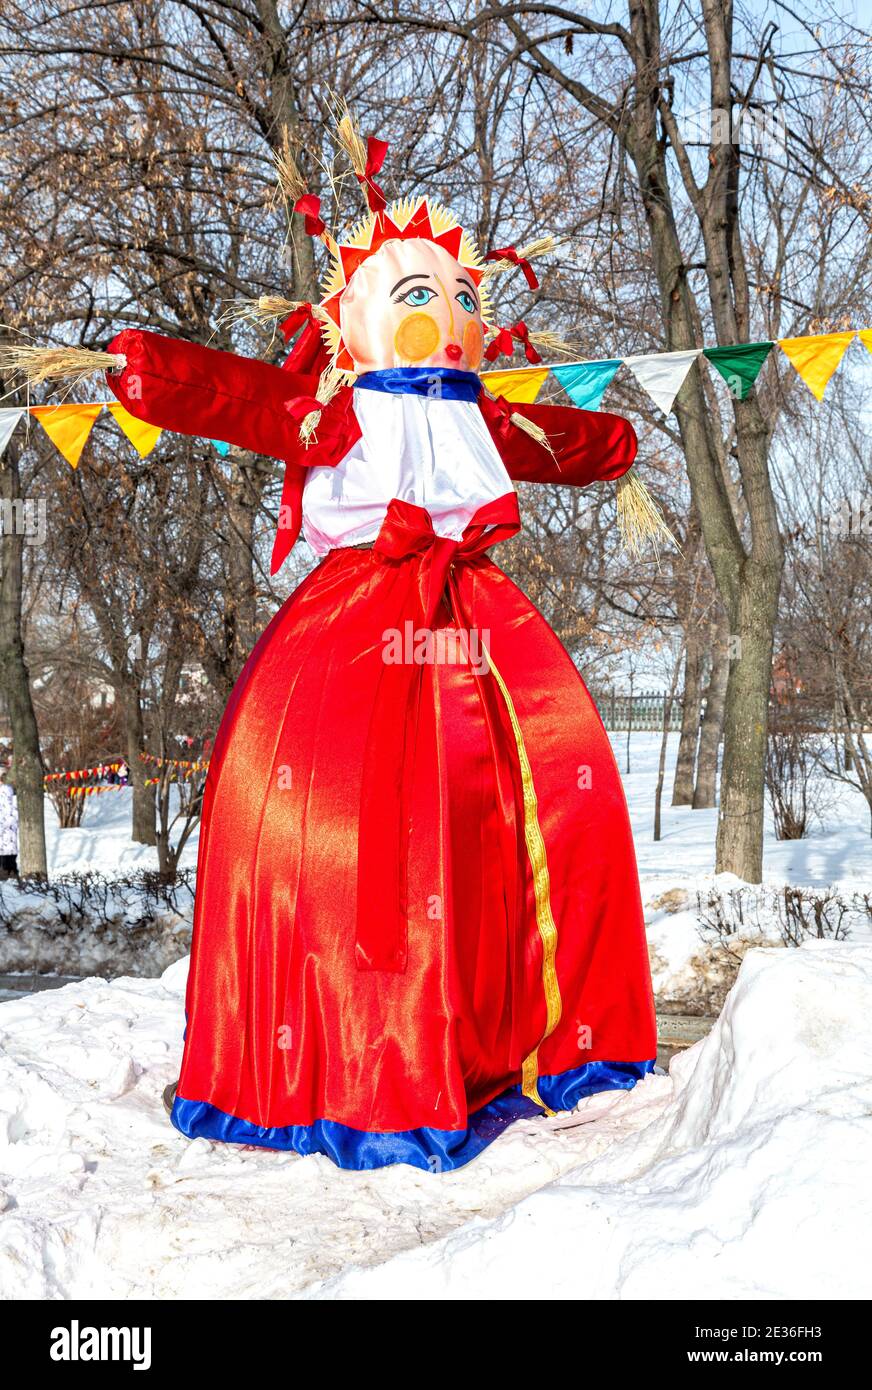 Samara, Russia - 18 febbraio 2018: Vacanza di Shrovetide in Russia. Bambola Shrovetide usa e getta preparata per bruciare al festival invernale di addio M. Foto Stock